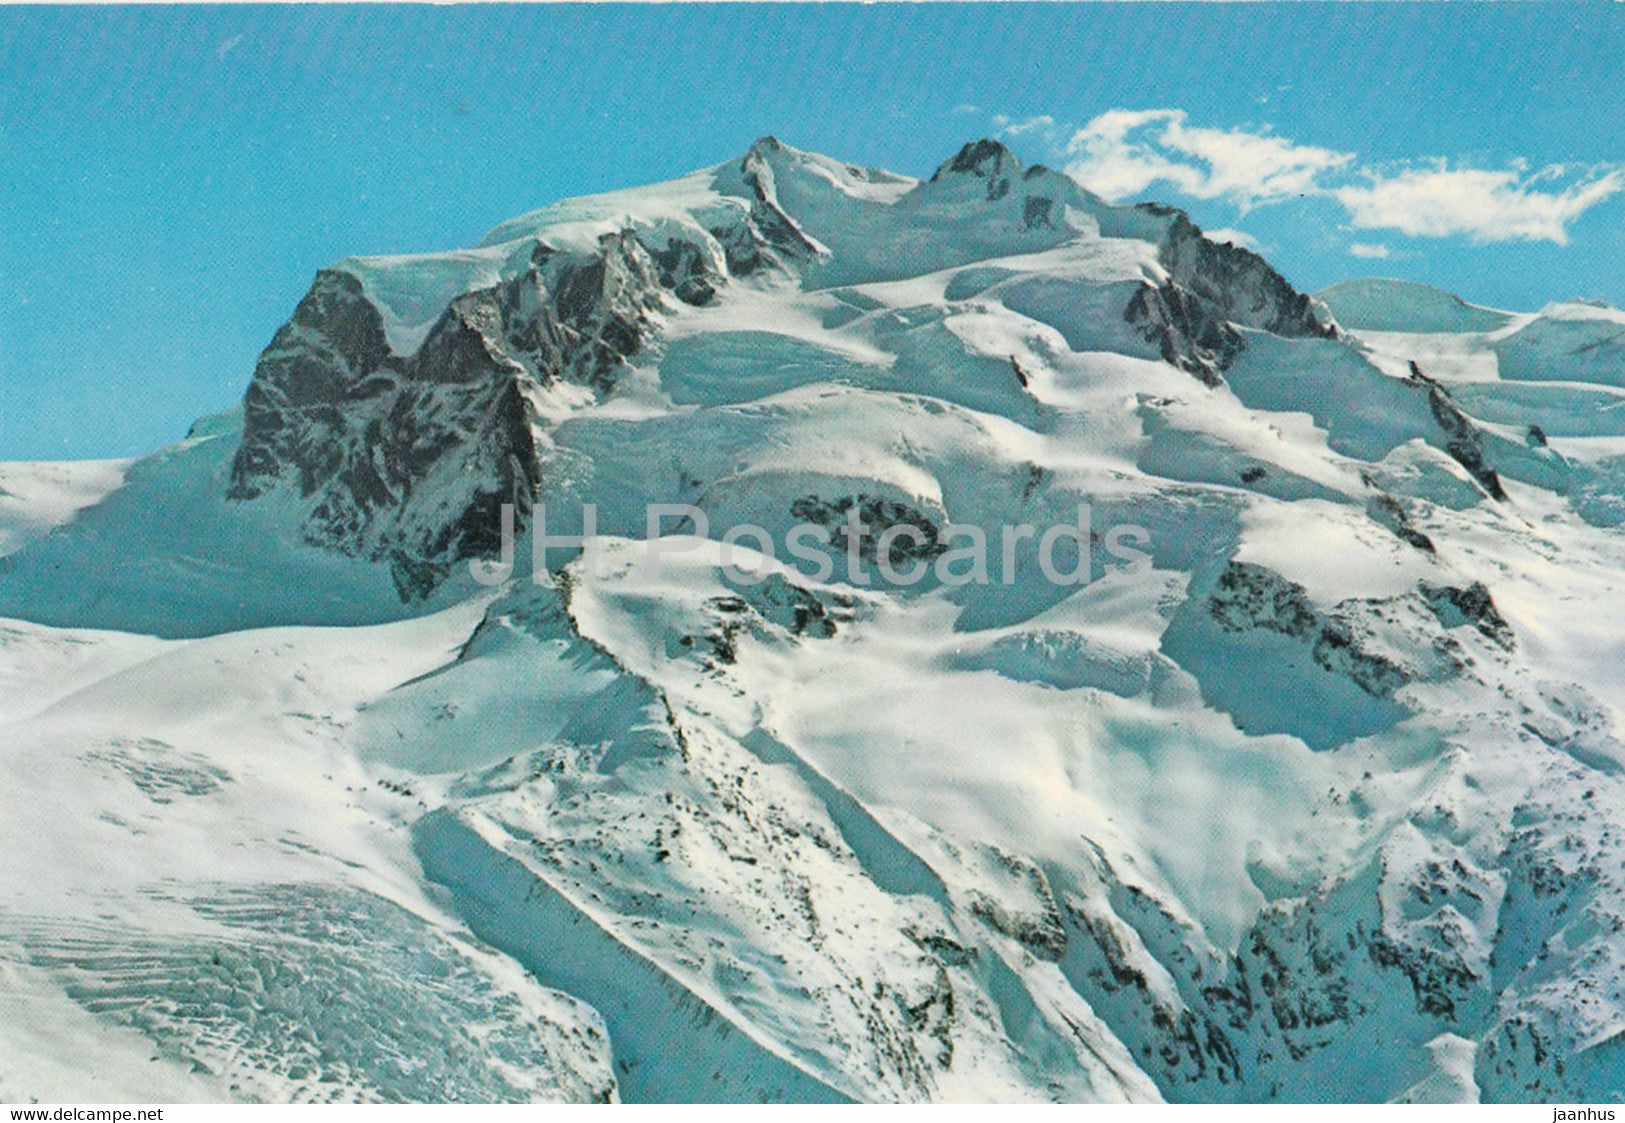 Monte Rosa 4634 m - Blick vom Gornergrat bei Zermatt - 49951 - Switzerland - unused - JH Postcards